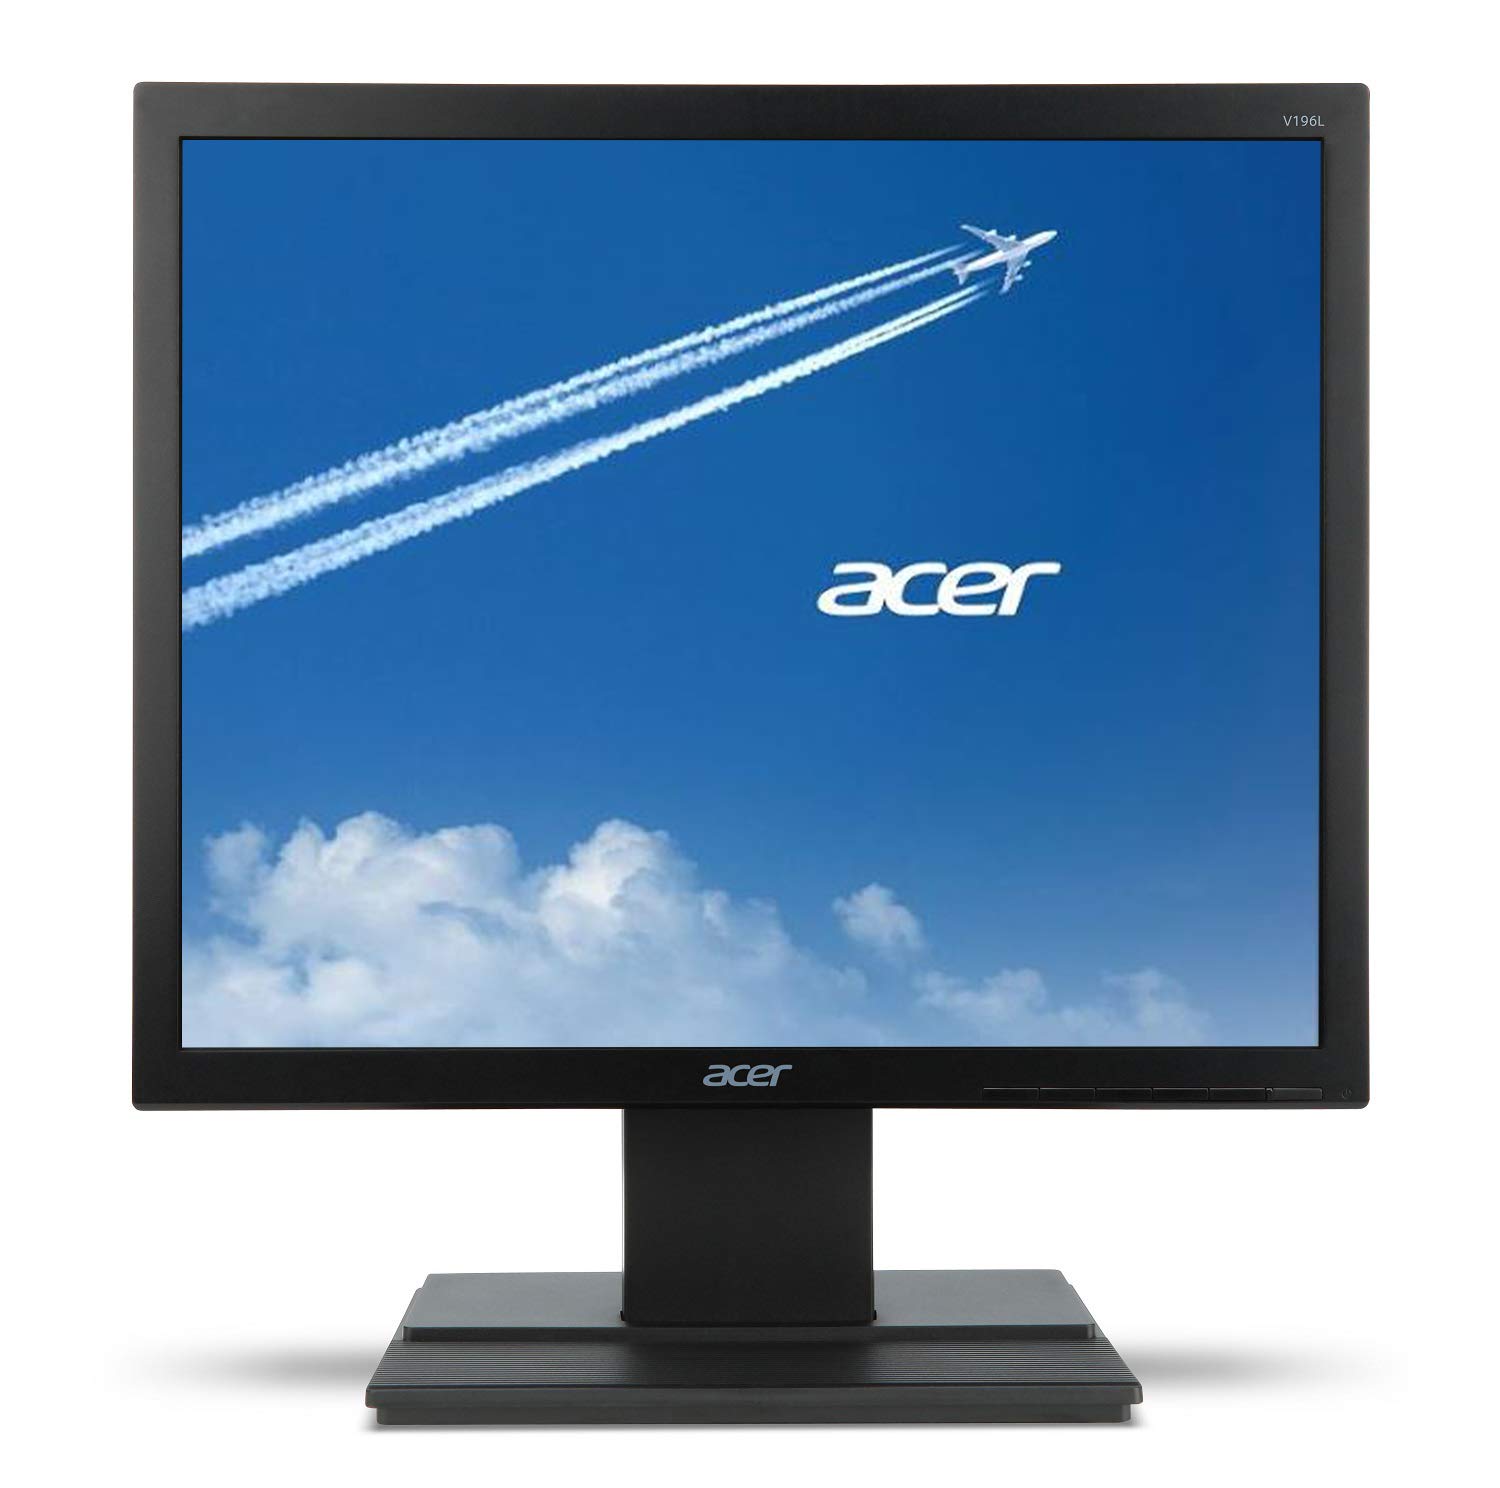 Acer V196L Bb 19-дюймовый IPS-монитор высокой четкости (1280 x 1024) (порт VGA)